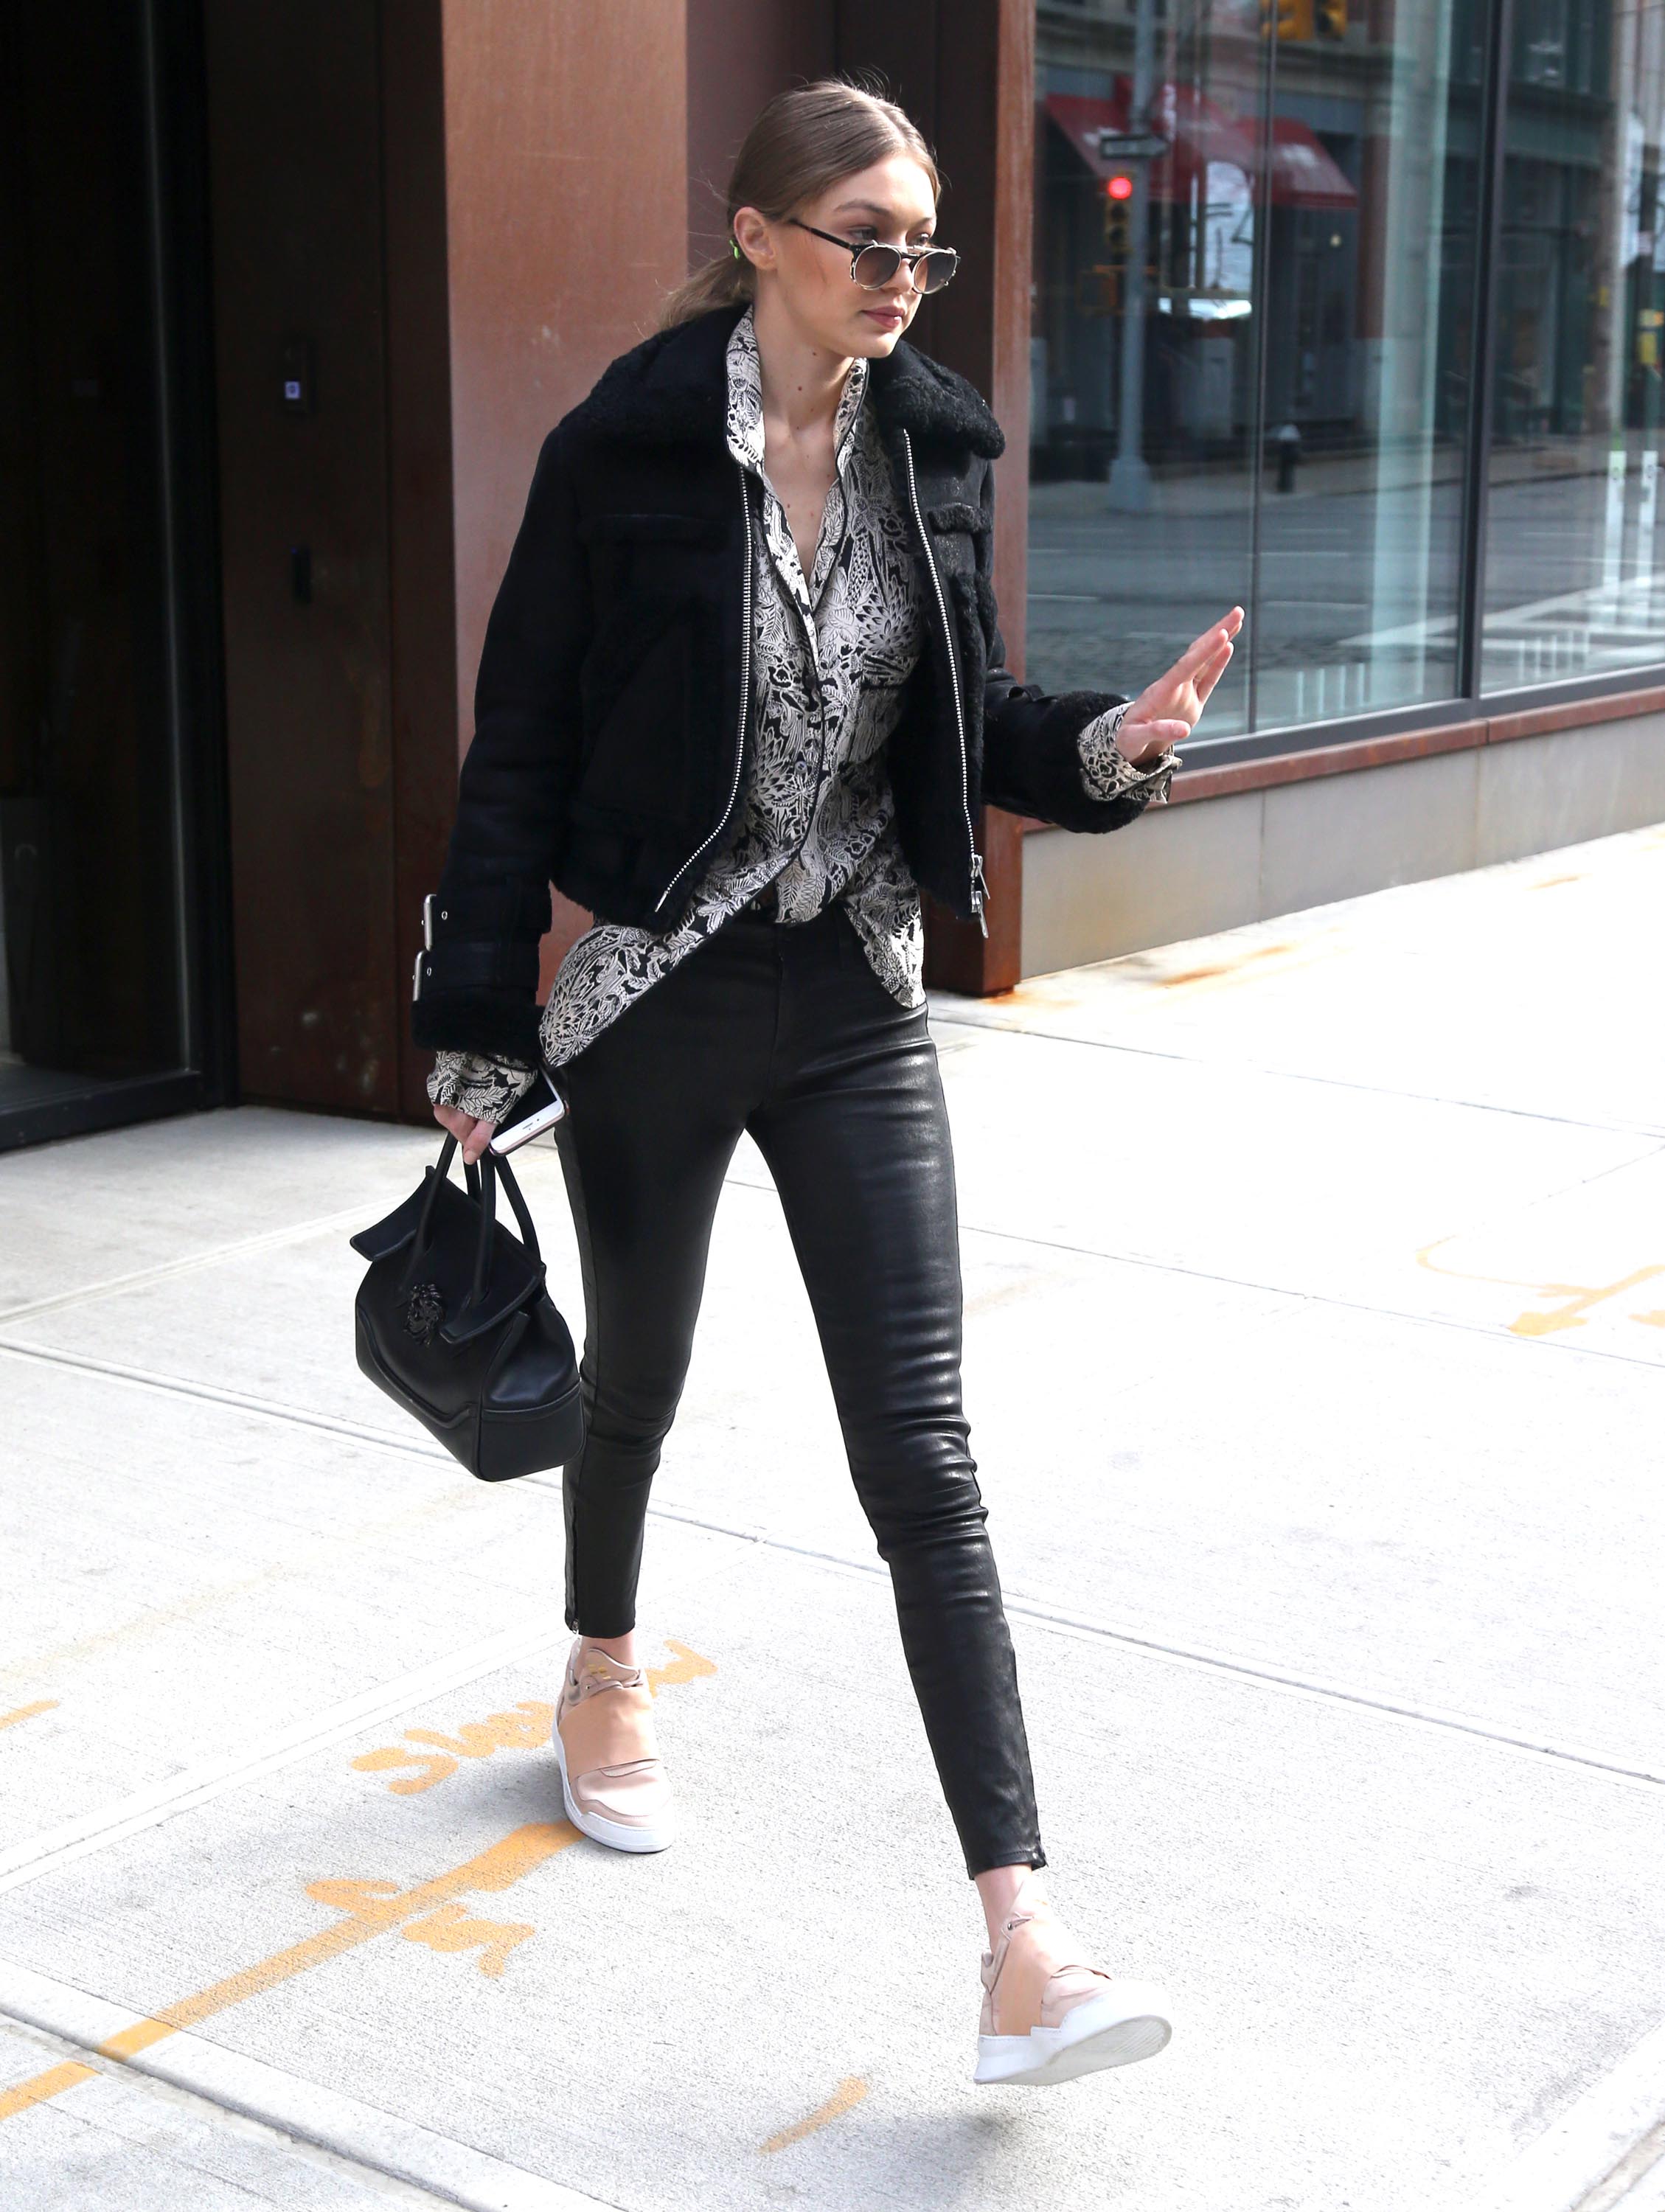 Gigi Hadid leaves her apartment